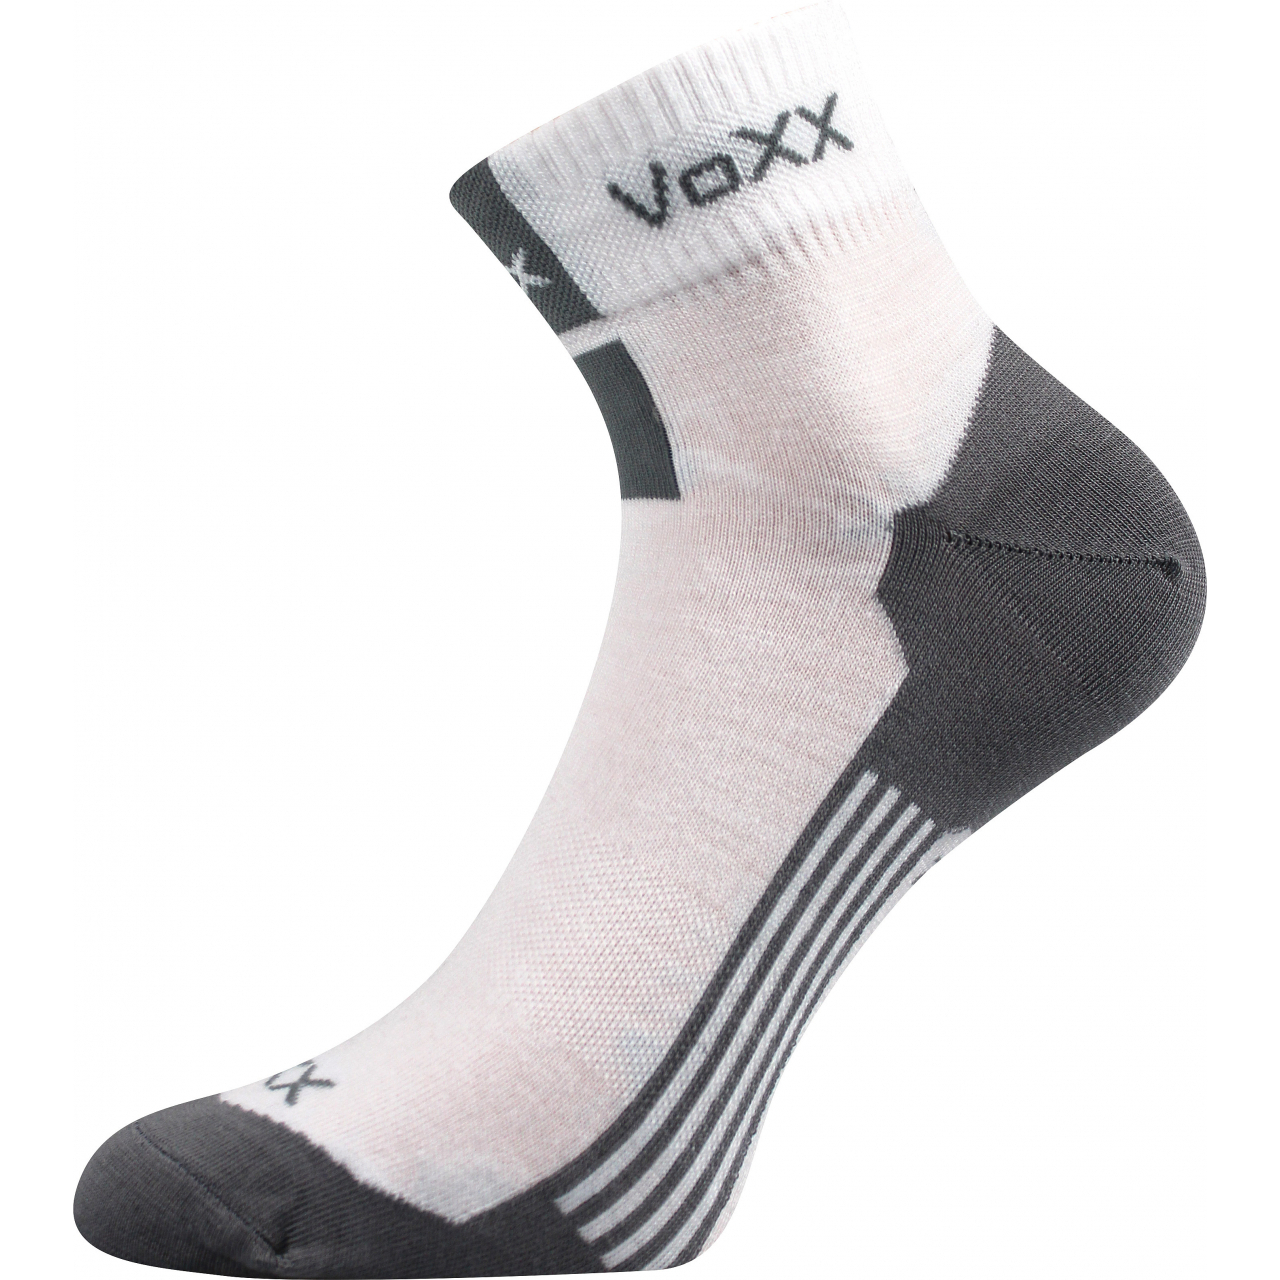 Ponožky unisex klasické Voxx Mostan silproX - bílé, 35-38